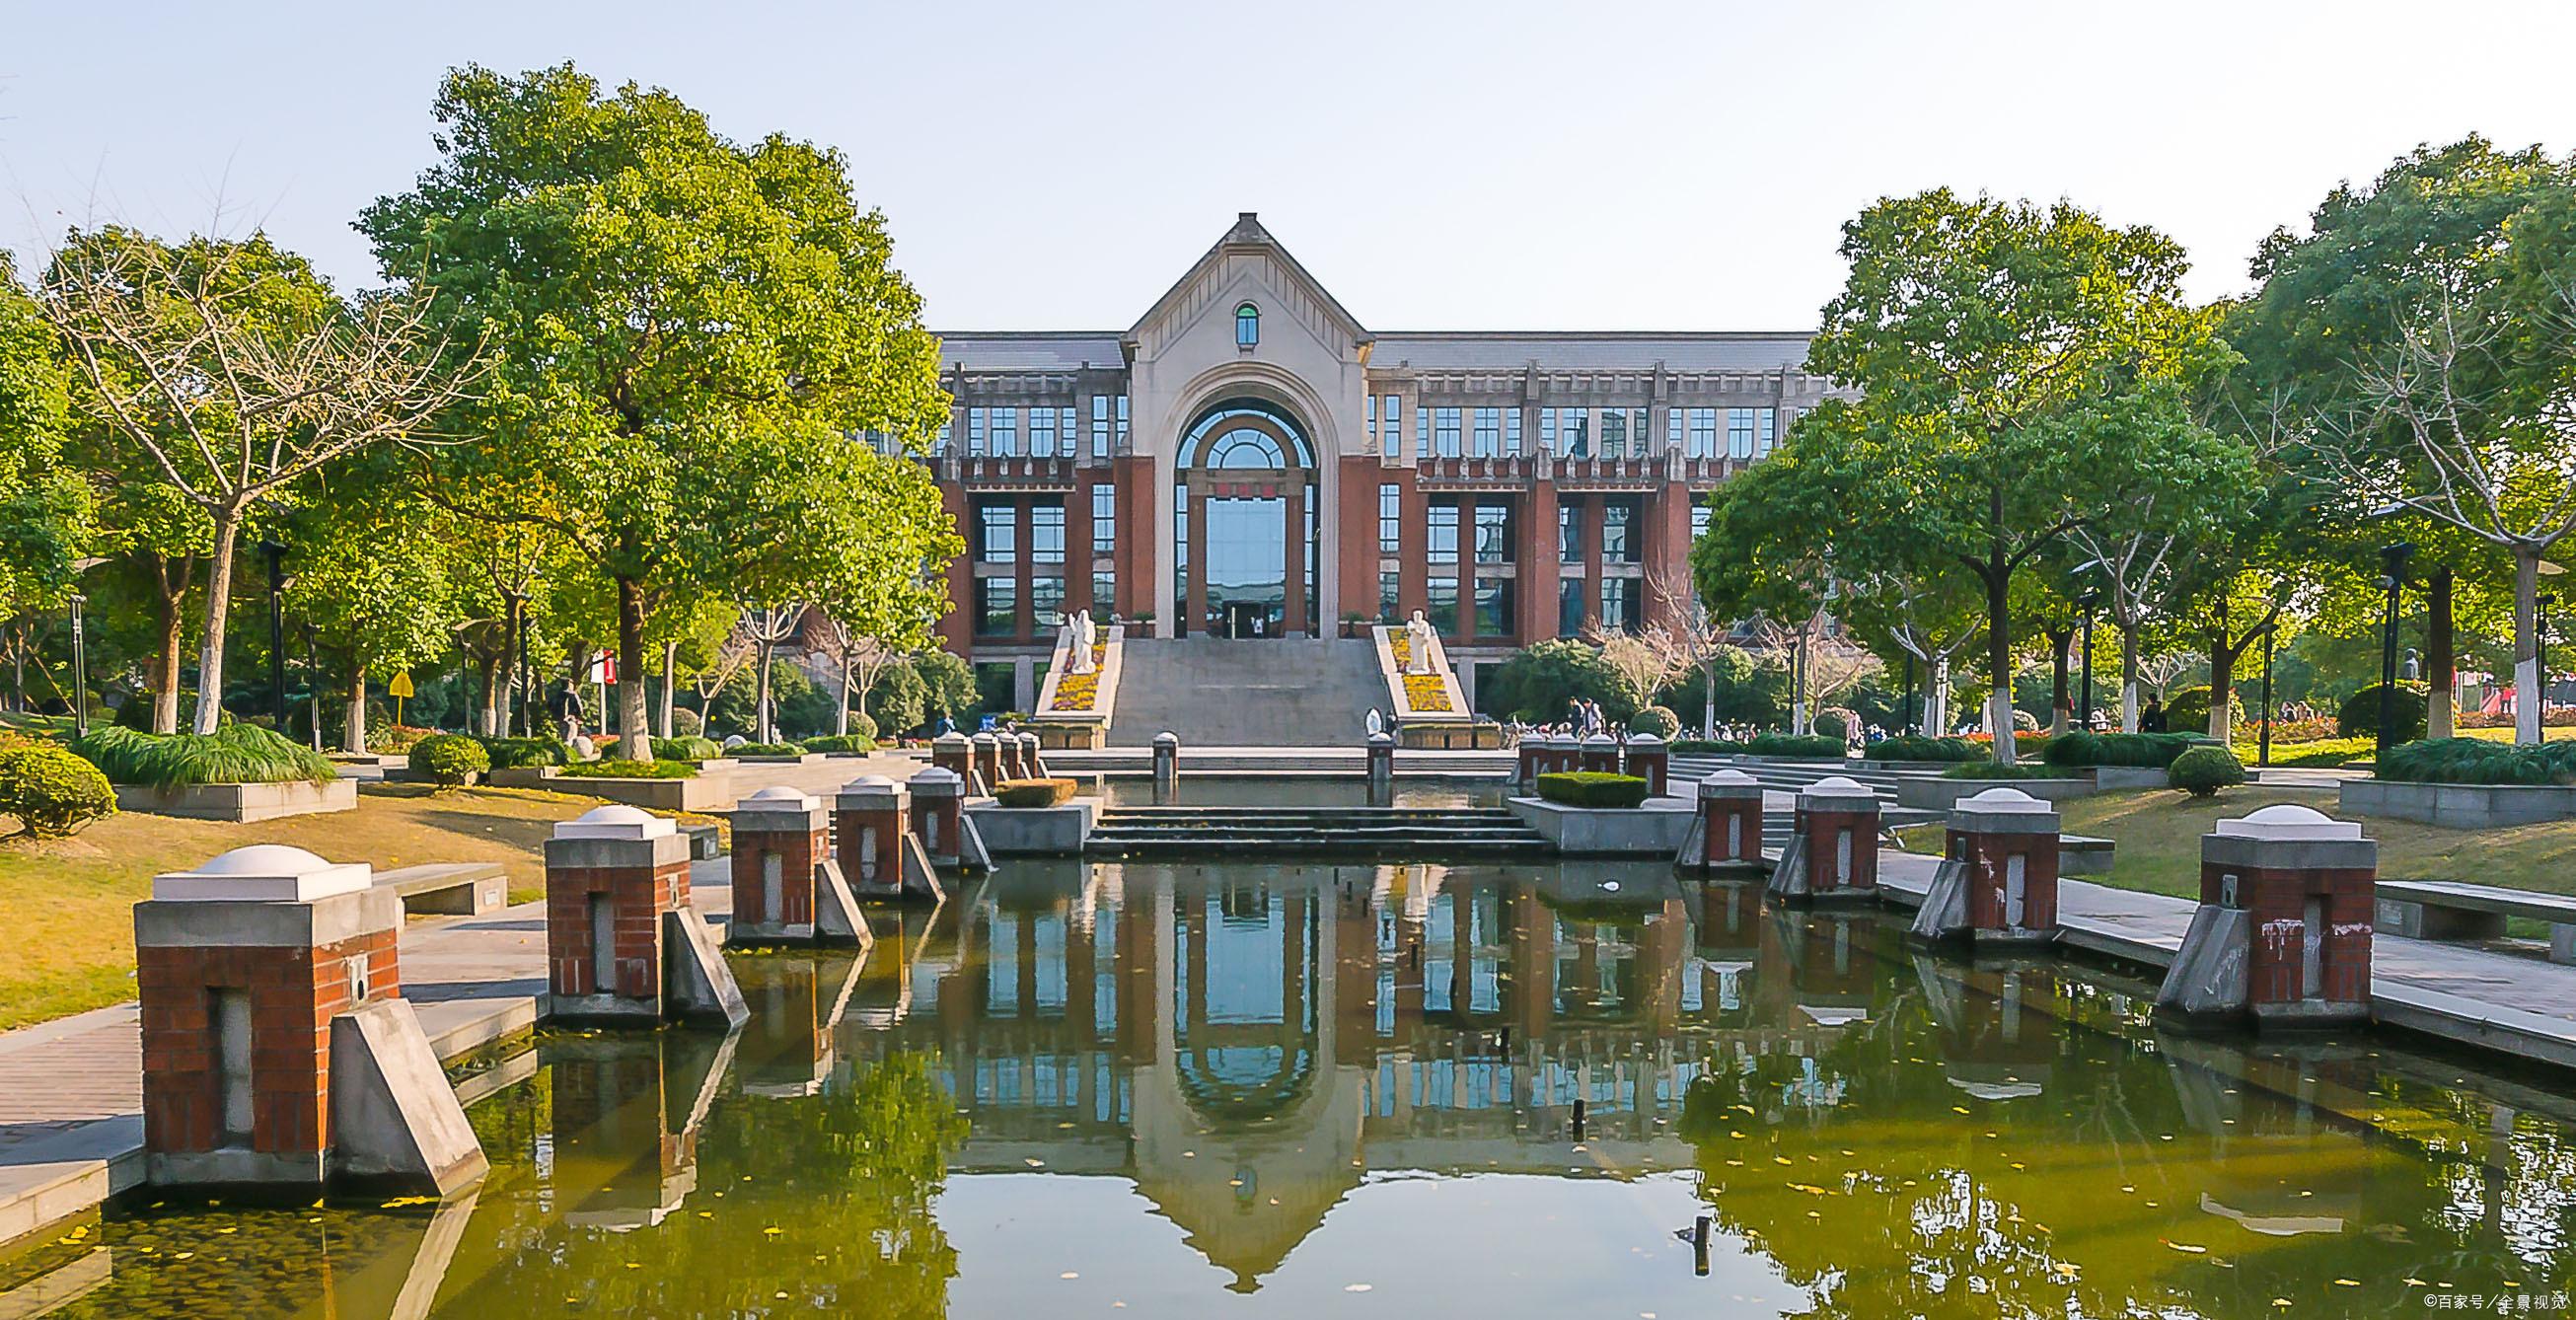 西南政法大学:位于重庆市,是新中国最早建立的高等政法学府,改革开放